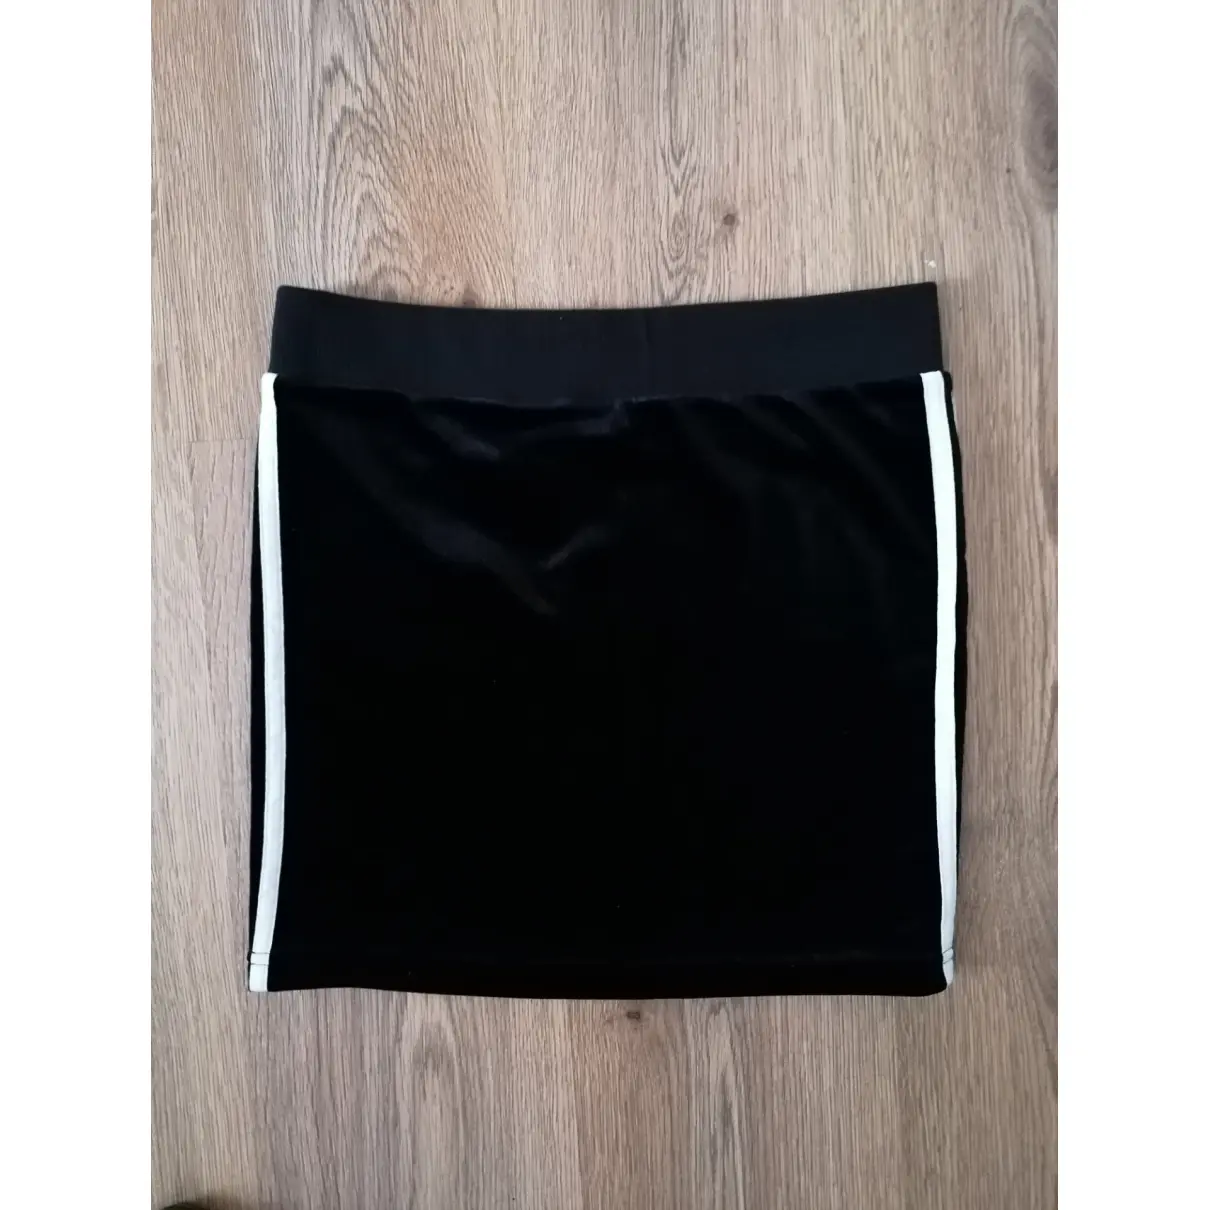 Buy Adidas Velvet mini skirt online